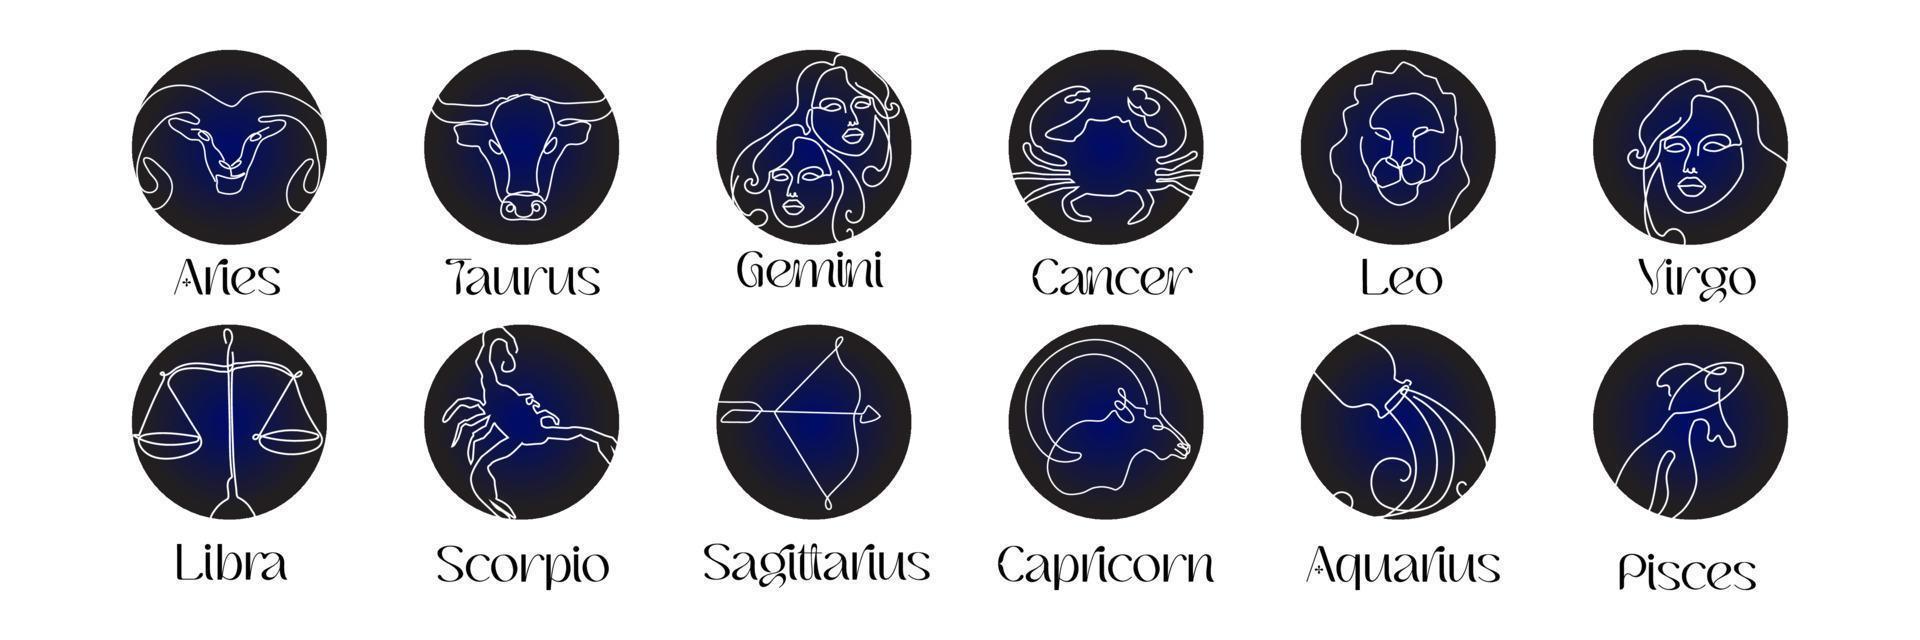 signes astrologiques du zodiaque dans le style d'art en ligne sur le symbole d'astrologie du zodiaque bleu foncé vecteur